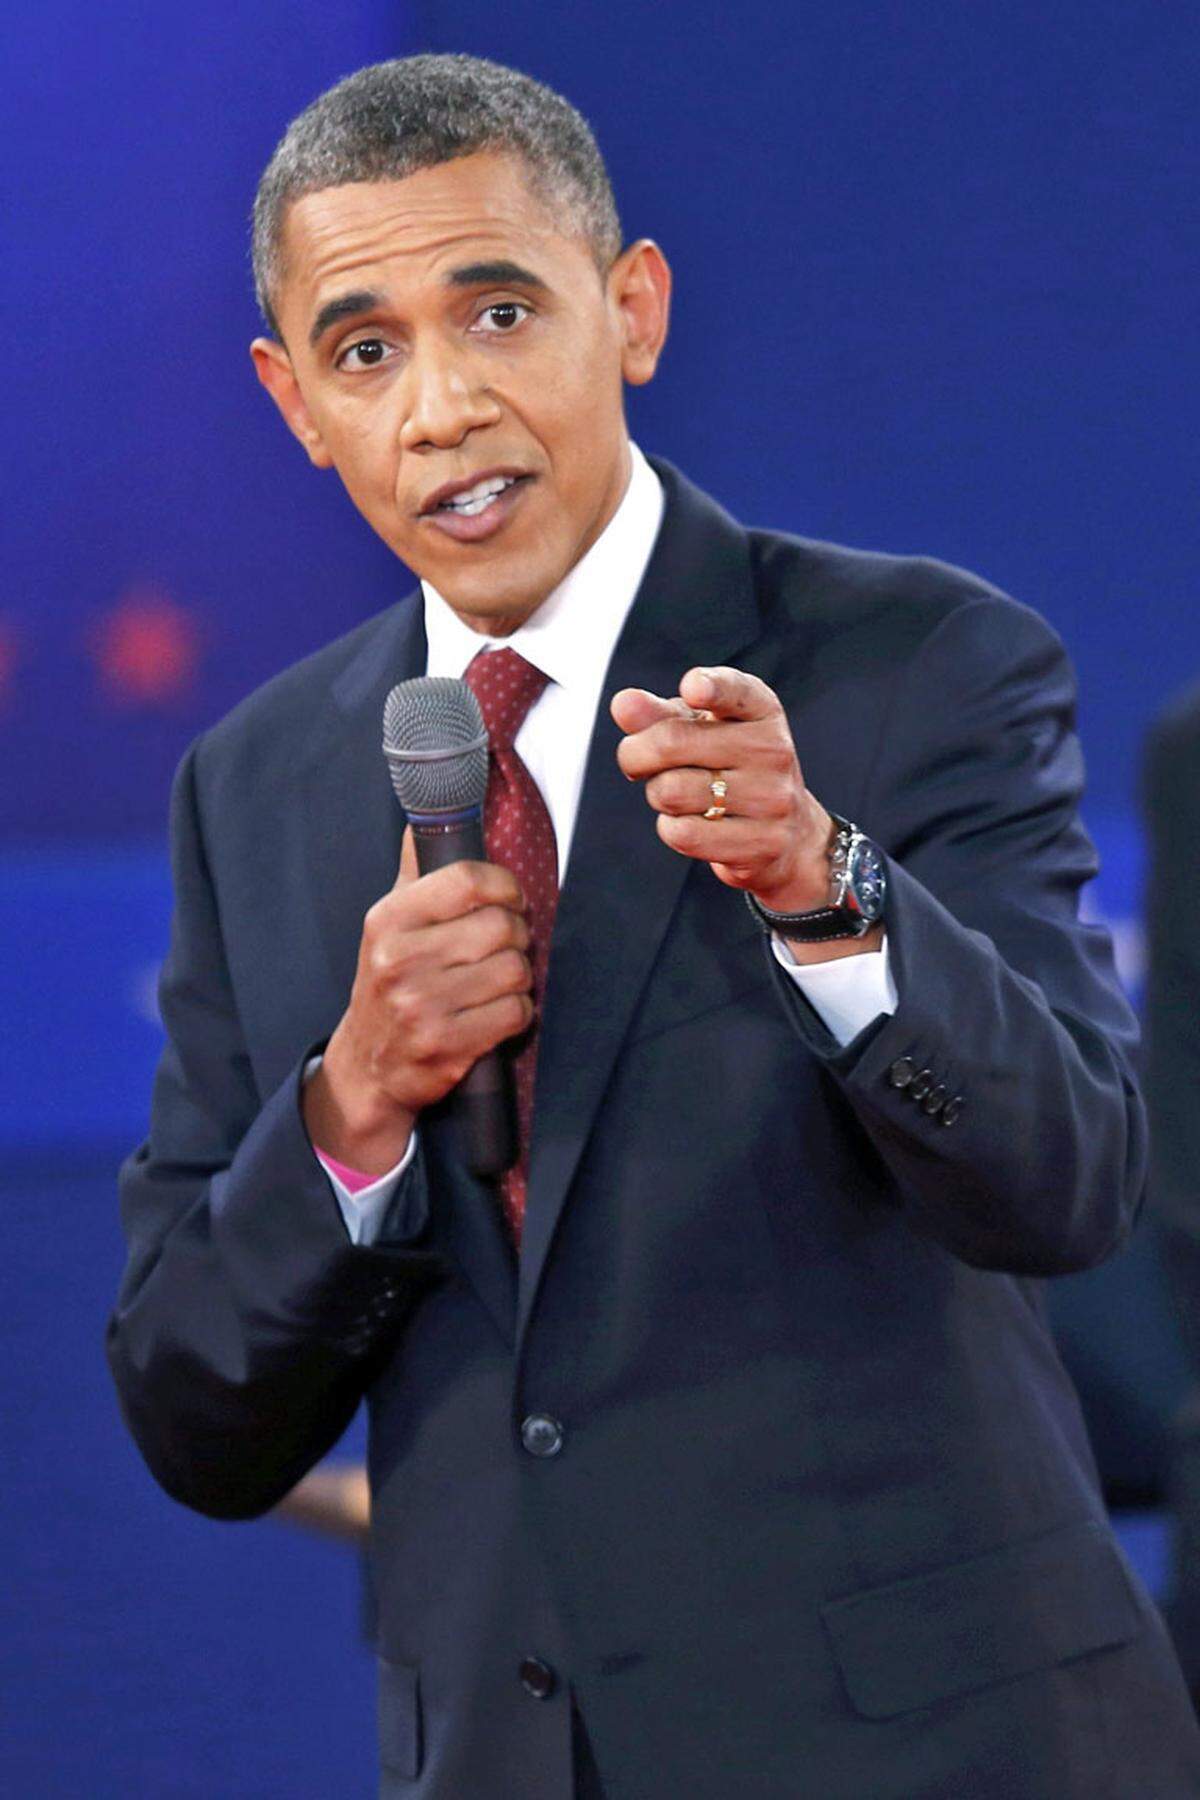 "Er zeigte den Kampfgeist, den er in der erste Debatte vor zwei Wochen nicht gezeigt hat", kommentierte die "New York Times" die Performance von Obama nur Minuten nach dem Rededuell.